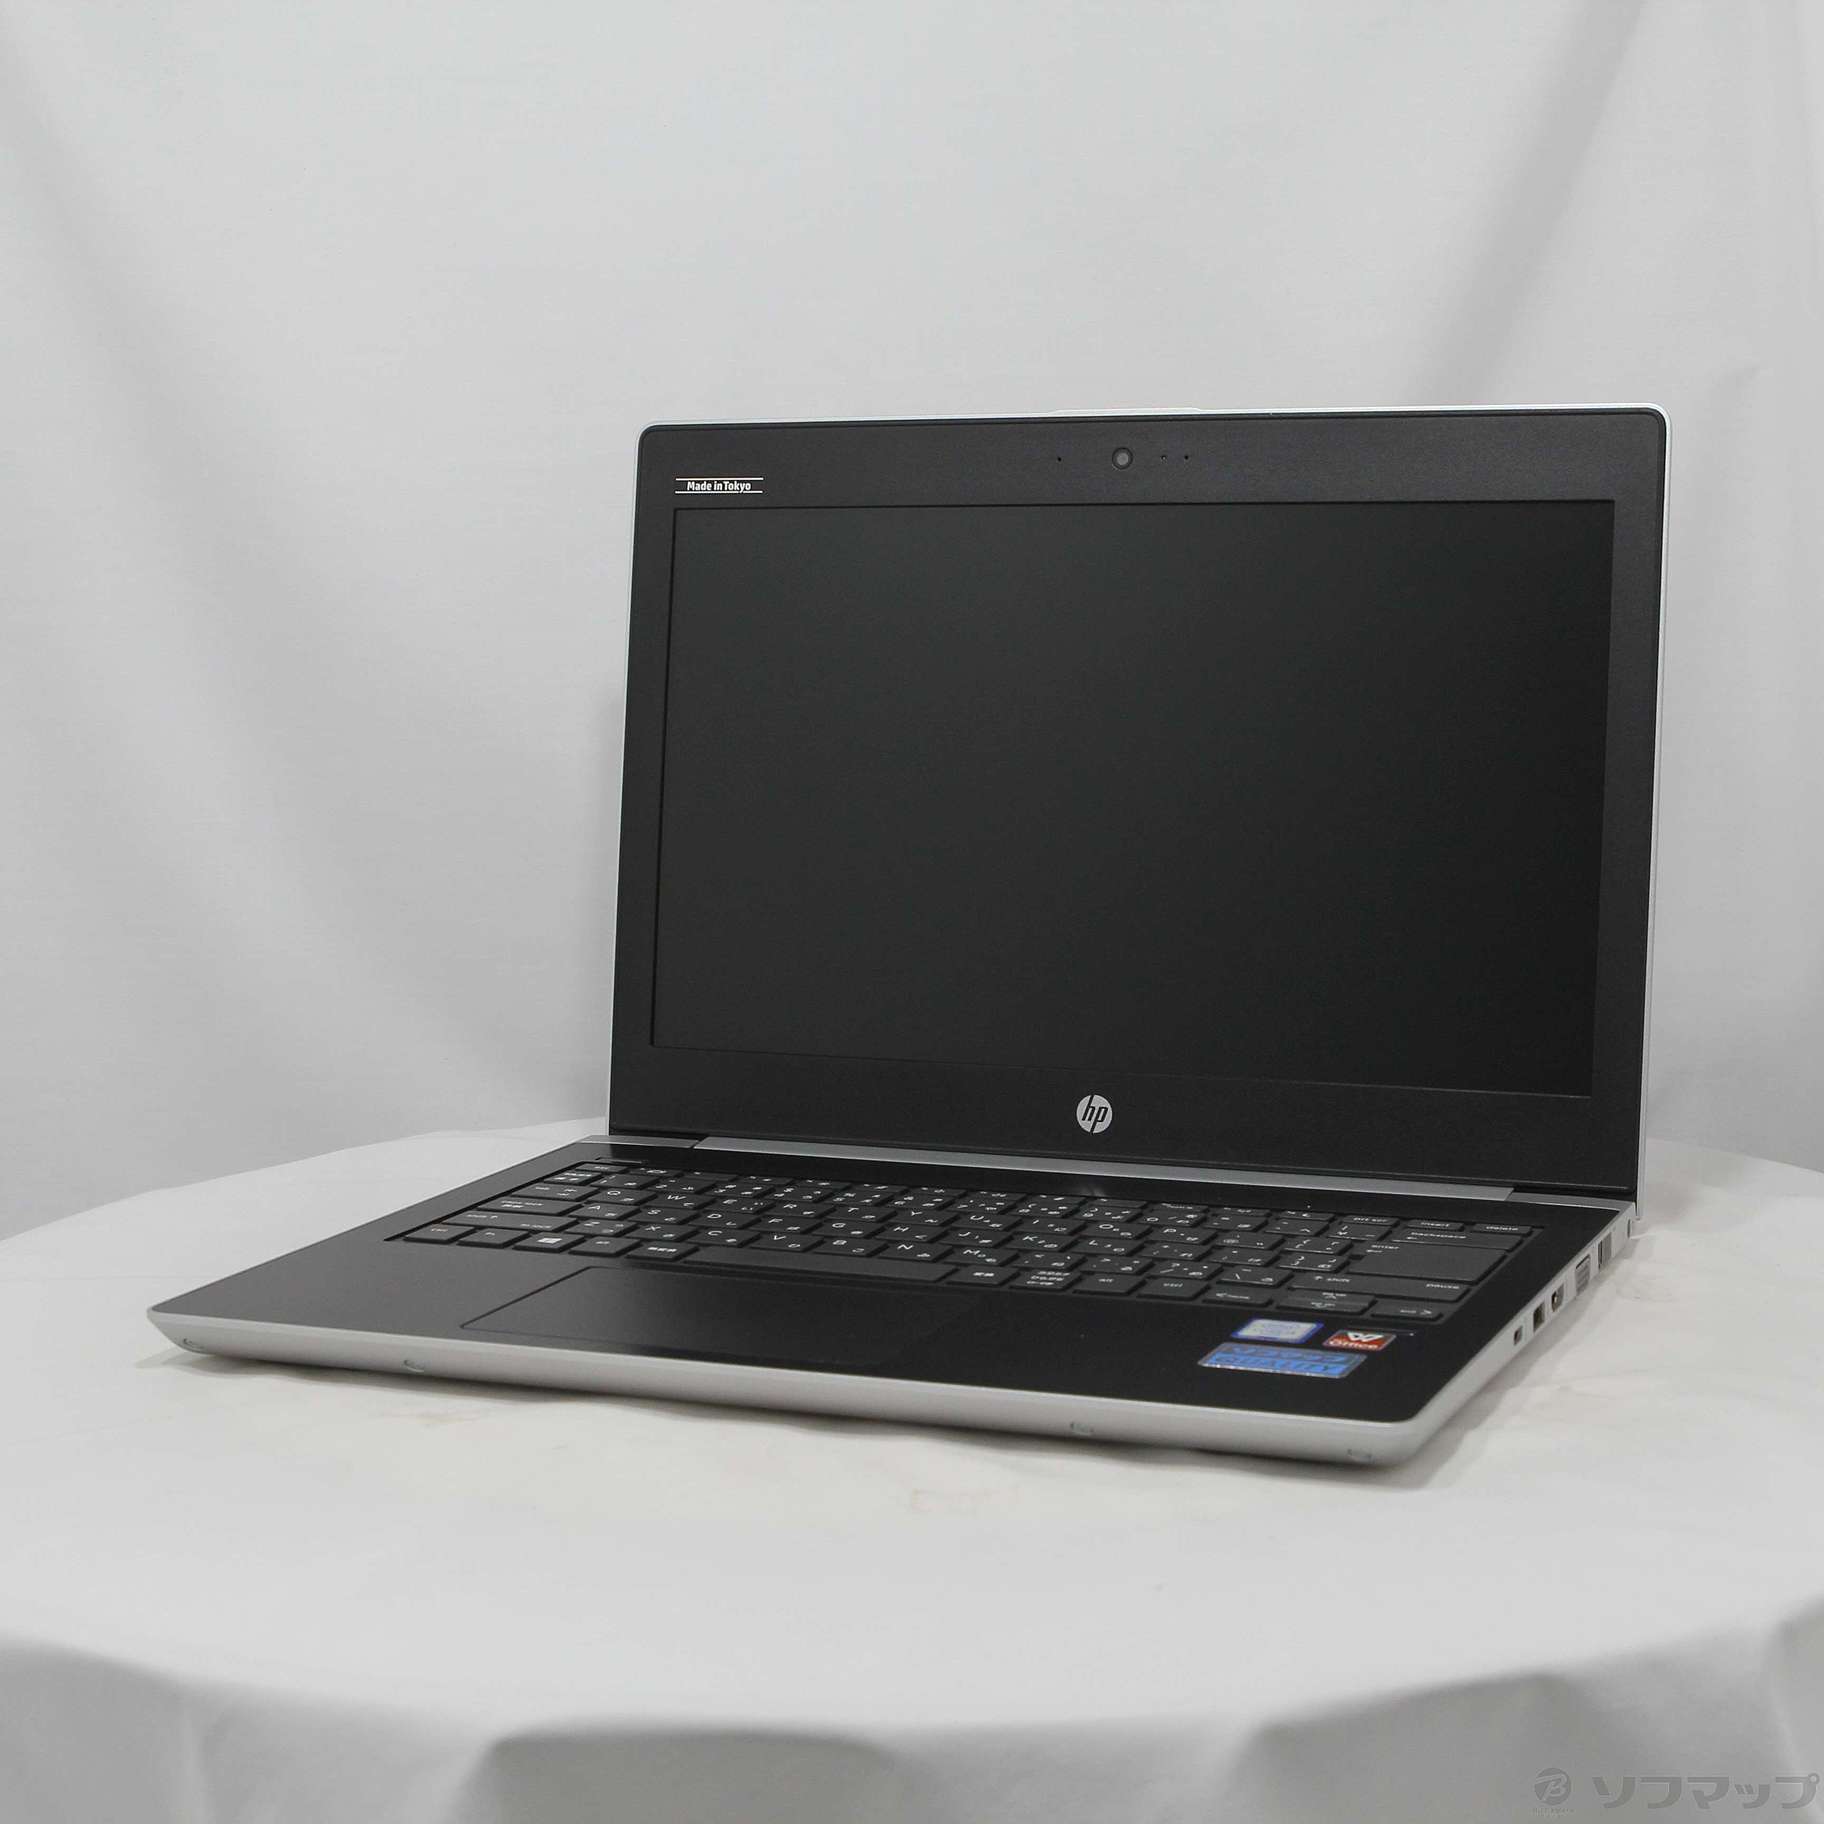 格安安心パソコン HP ProBook 430 G5 2DX43AV-AAGC 〔Windows 10〕